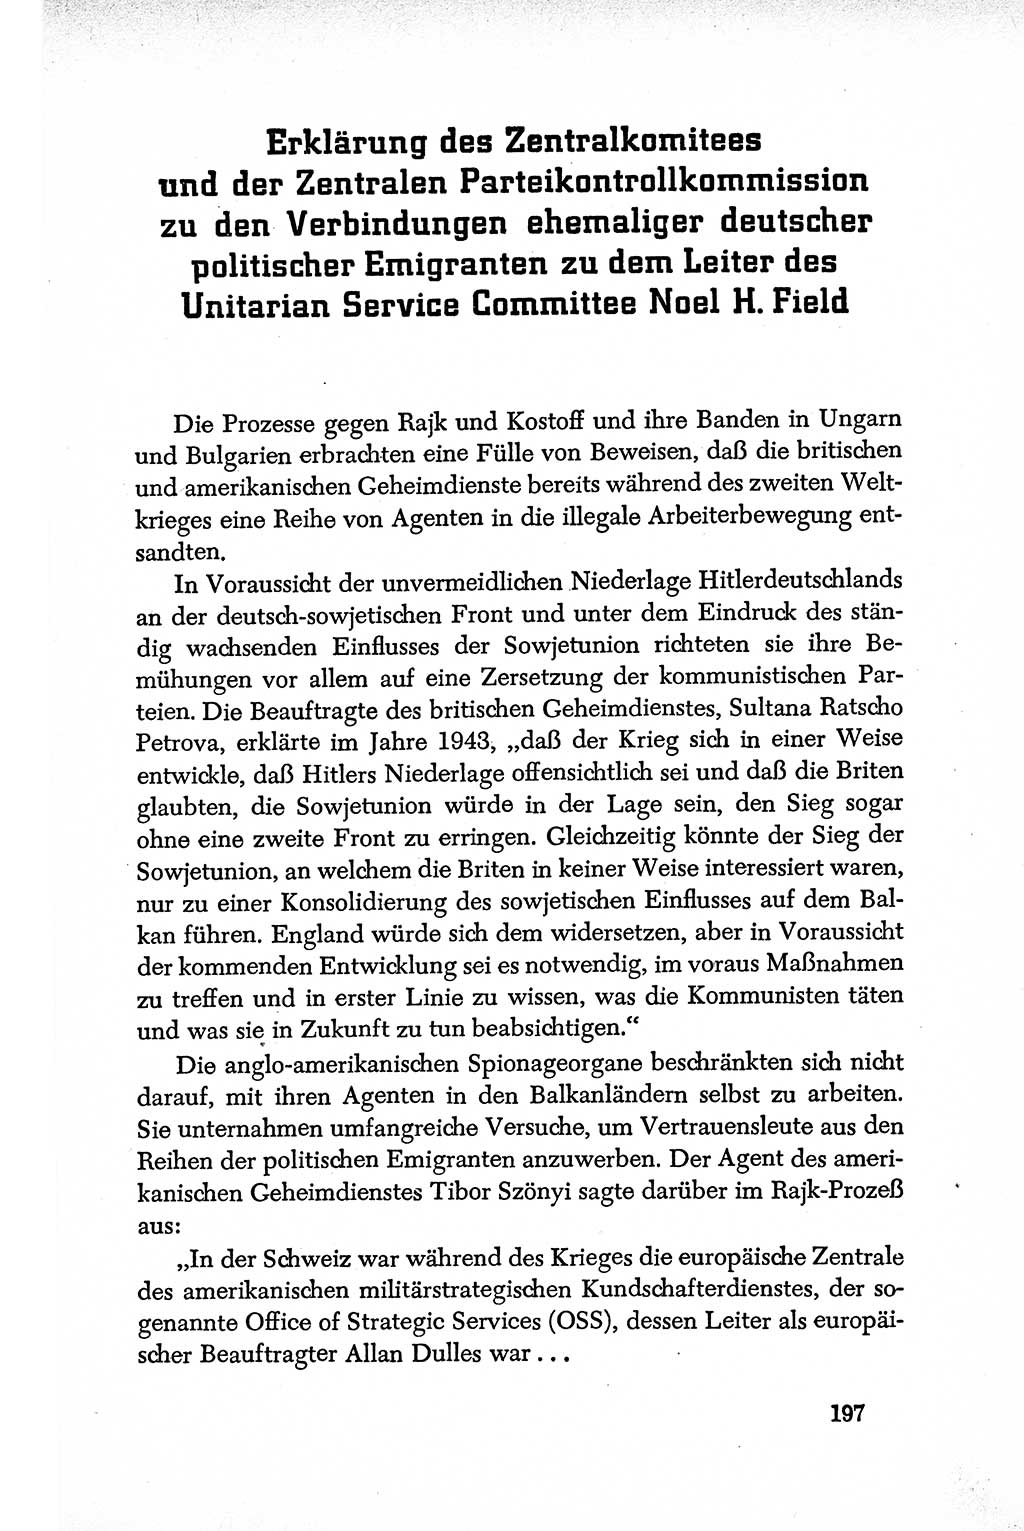 Dokumente der Sozialistischen Einheitspartei Deutschlands (SED) [Deutsche Demokratische Republik (DDR)] 1950-1952, Seite 197 (Dok. SED DDR 1950-1952, S. 197)